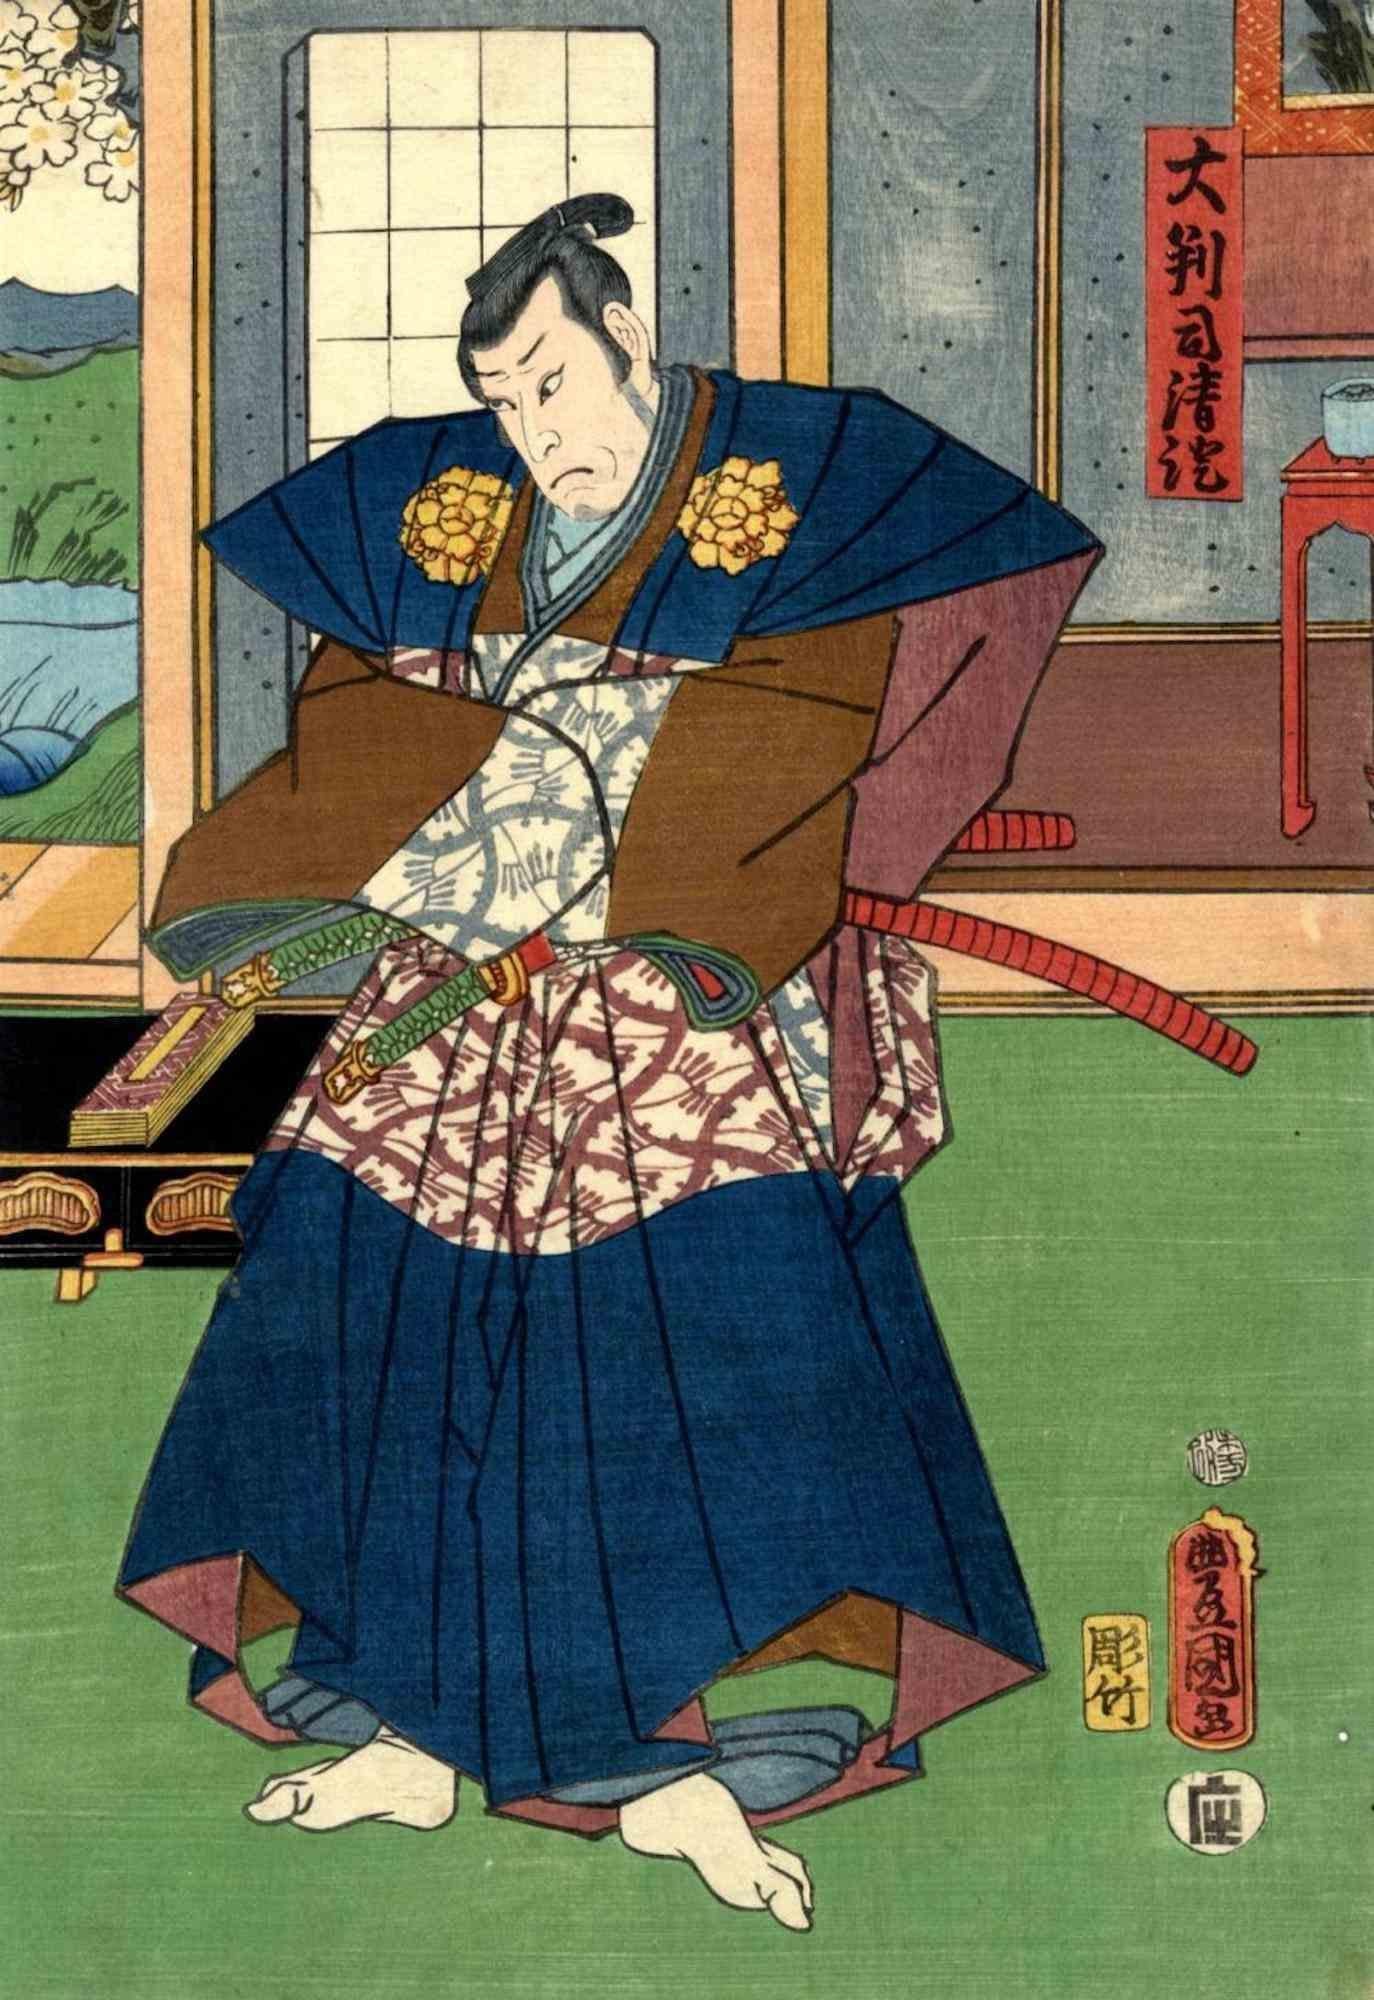 Utagawa Kunisada (Toyokuni III) Figurative Print - Judge Dai Hanji Kiyozumi - Woodcut Print by Utagawa Kunisada - 1859